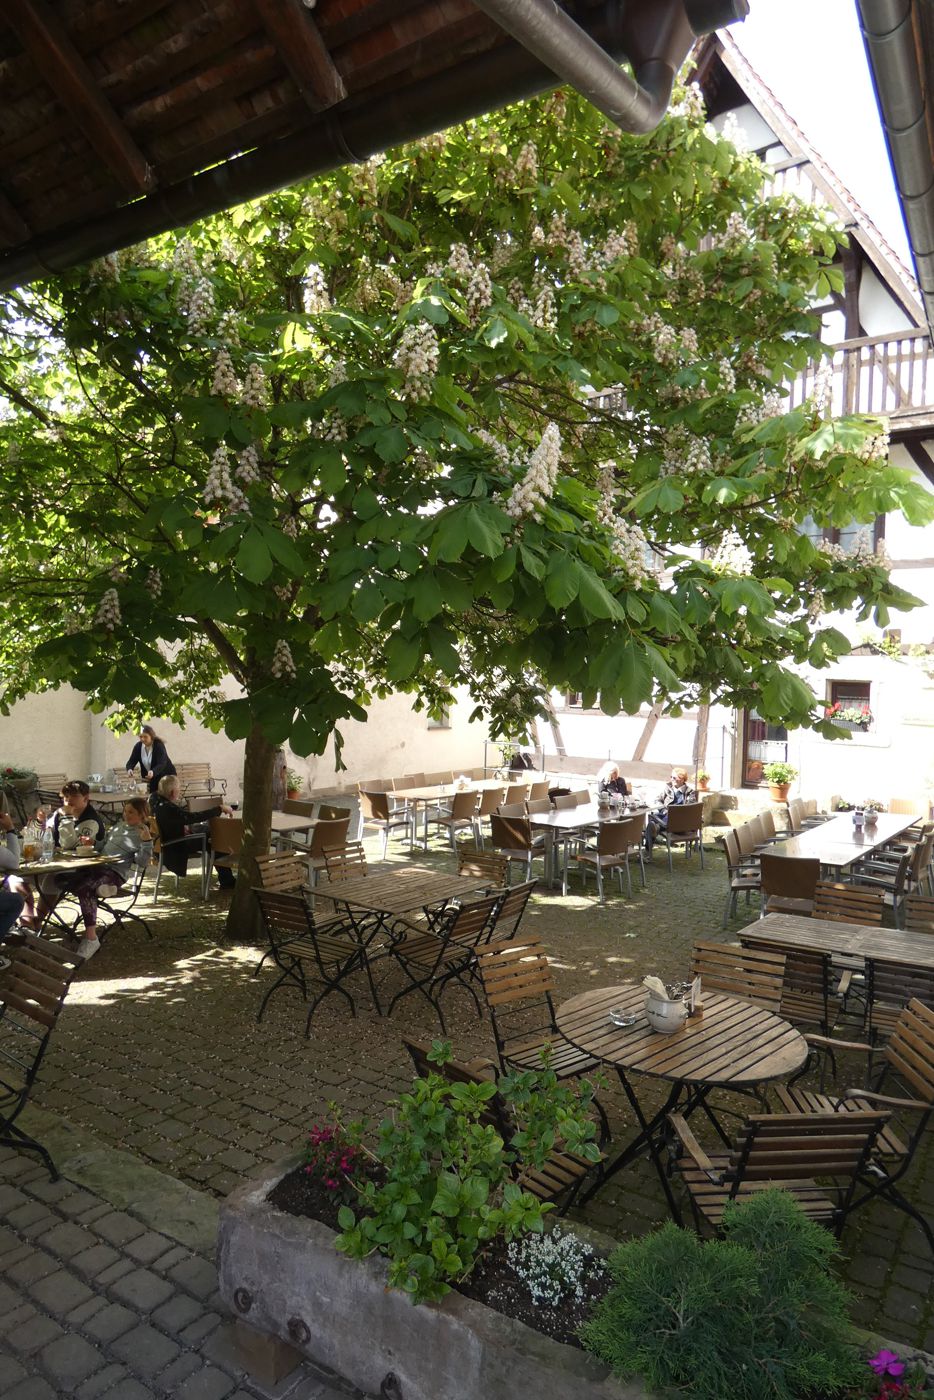 Hinter dem denkmalgeschützen Fachwerkhaus liegt unter einer großen Kastanie der Biergarten des Restaurants „Zum Nachtwächter“ in Lienzingen.